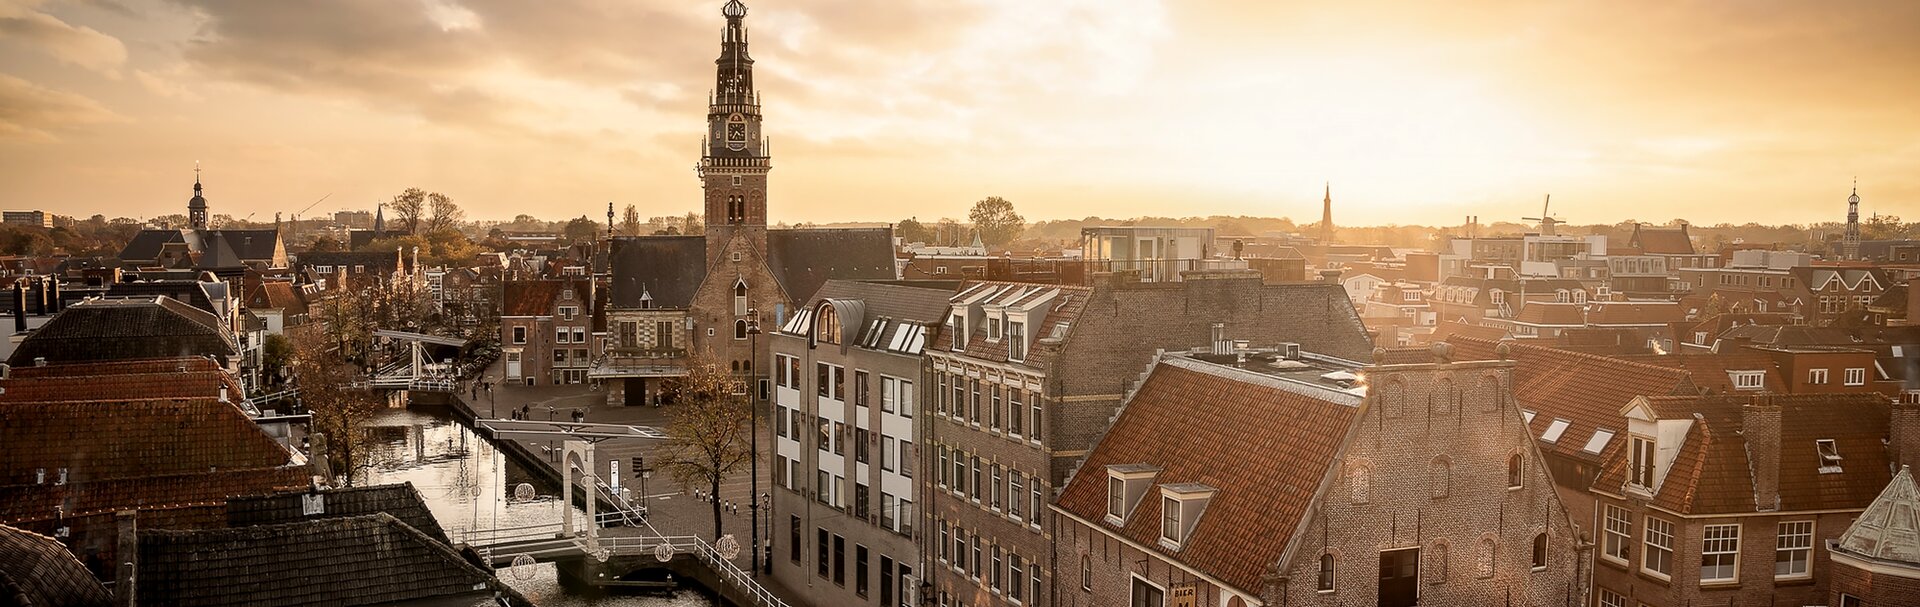 ¡Descubre la ciudad espléndida de Alkmaar!